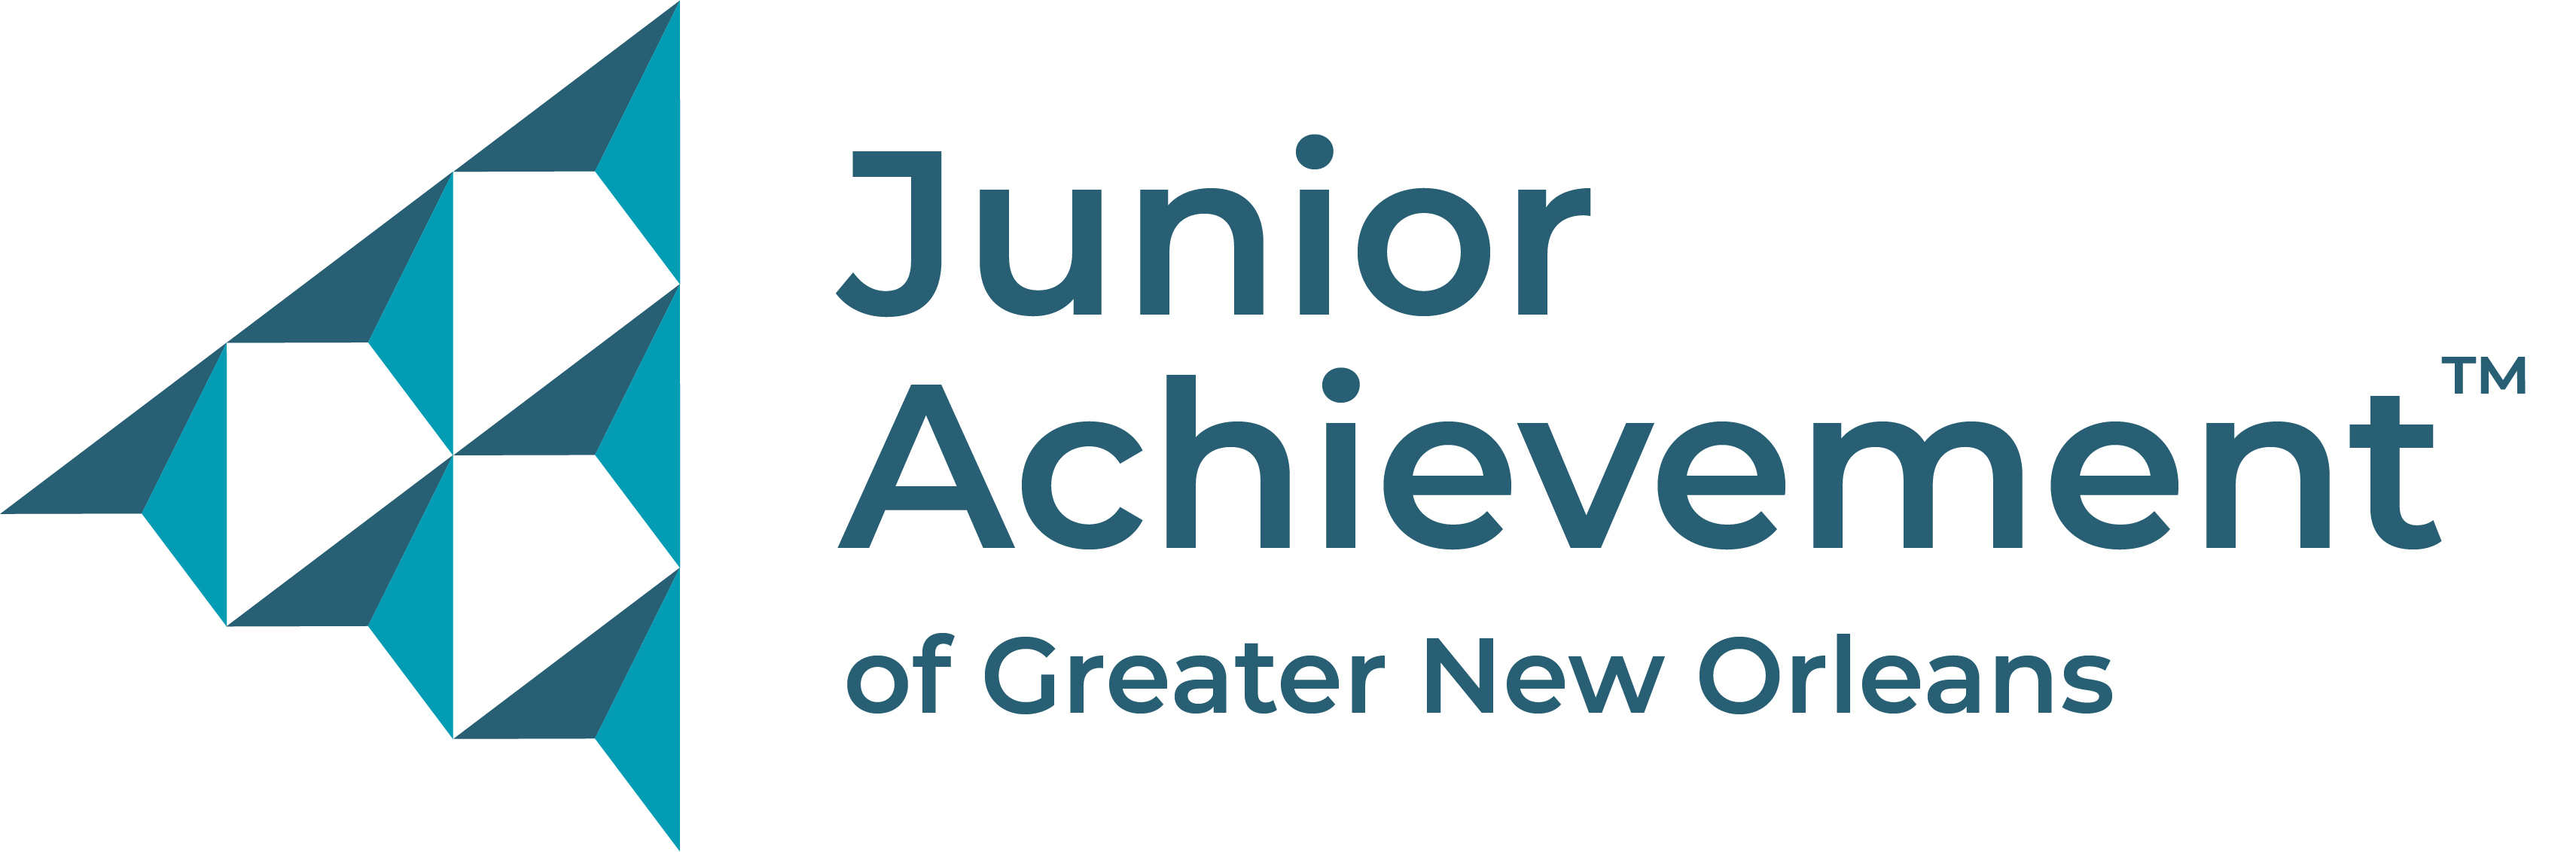 Junior Achievement GNO logo